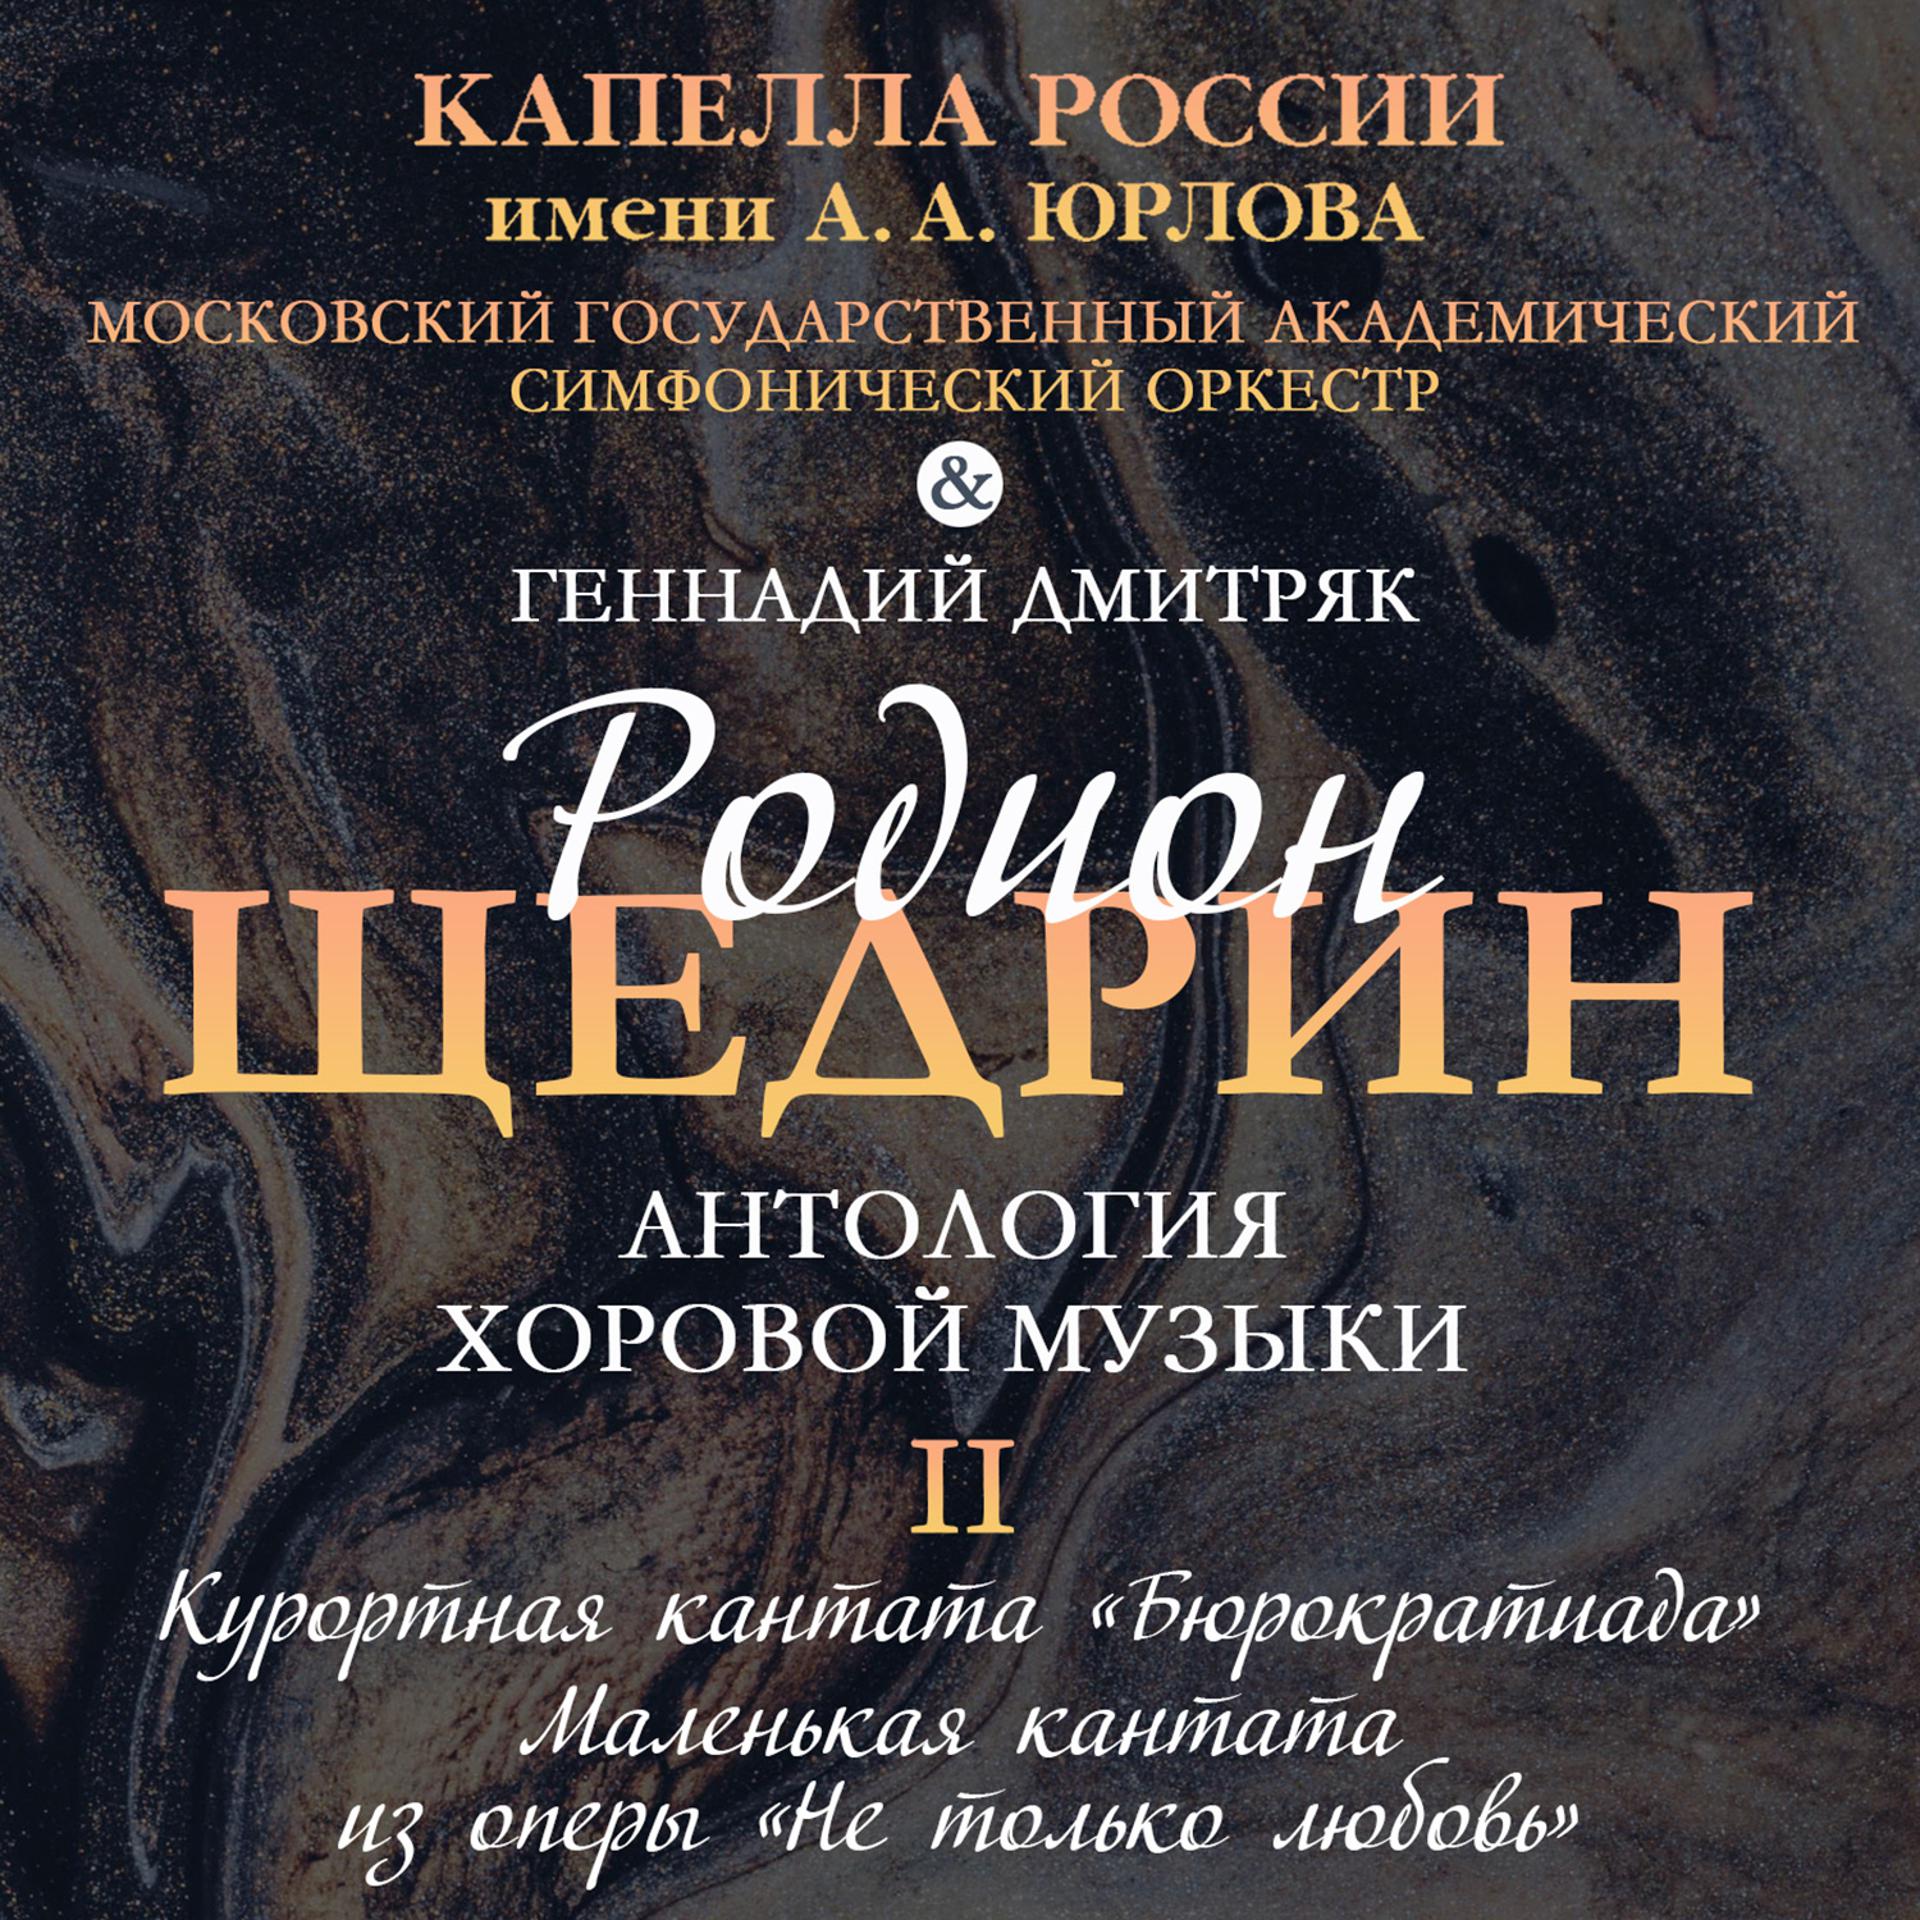 Московский государственный академический симфонический оркестр - фото